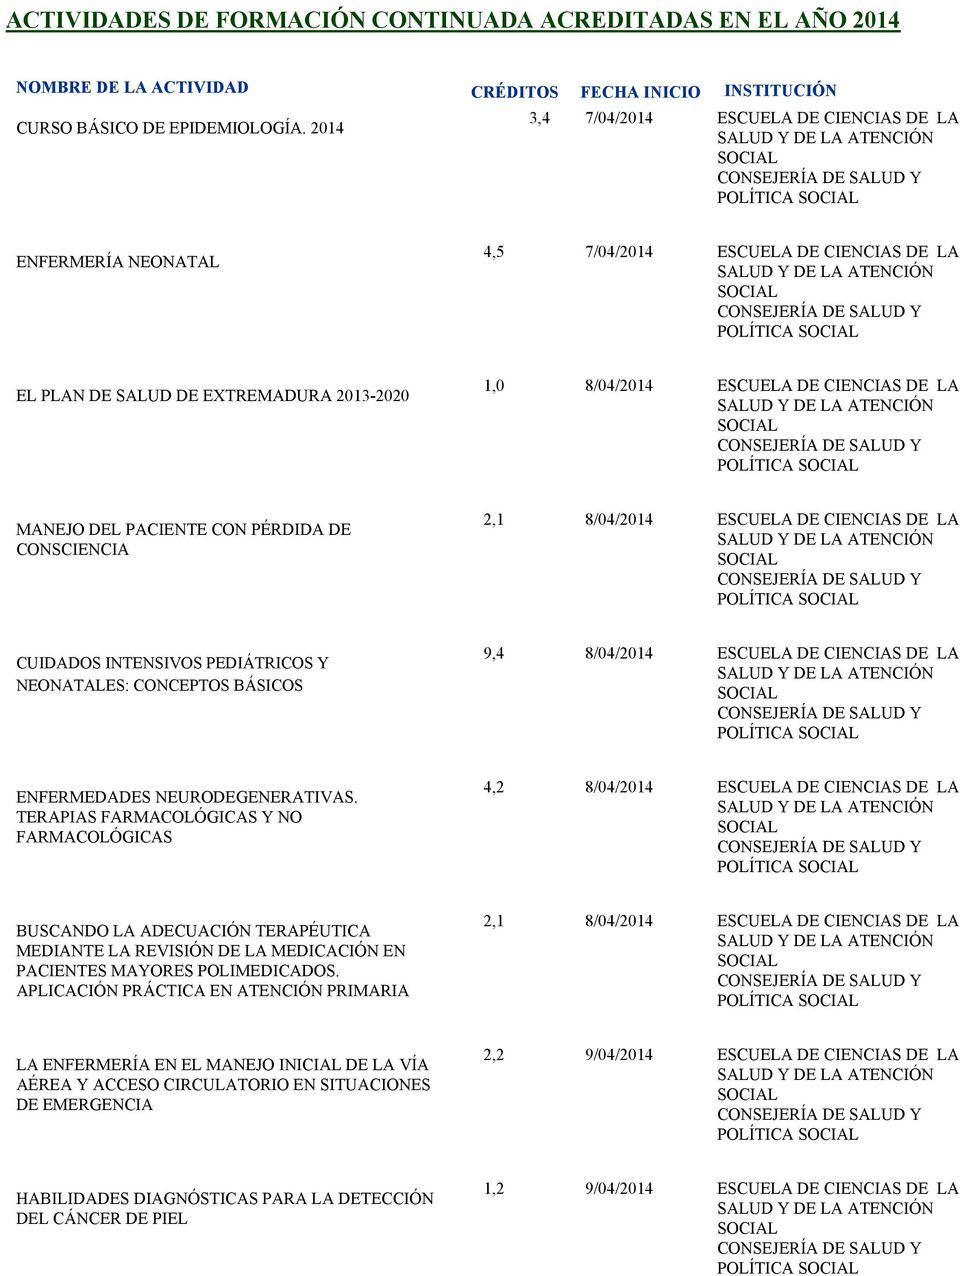 PACIENTE CON PÉRDIDA DE CONSCIENCIA 2,1 8/04/2014 ESCUELA DE CIENCIAS DE LA CUIDADOS INTENSIVOS PEDIÁTRICOS Y NEONATALES: CONCEPTOS BÁSICOS 9,4 8/04/2014 ESCUELA DE CIENCIAS DE LA ENFERMEDADES